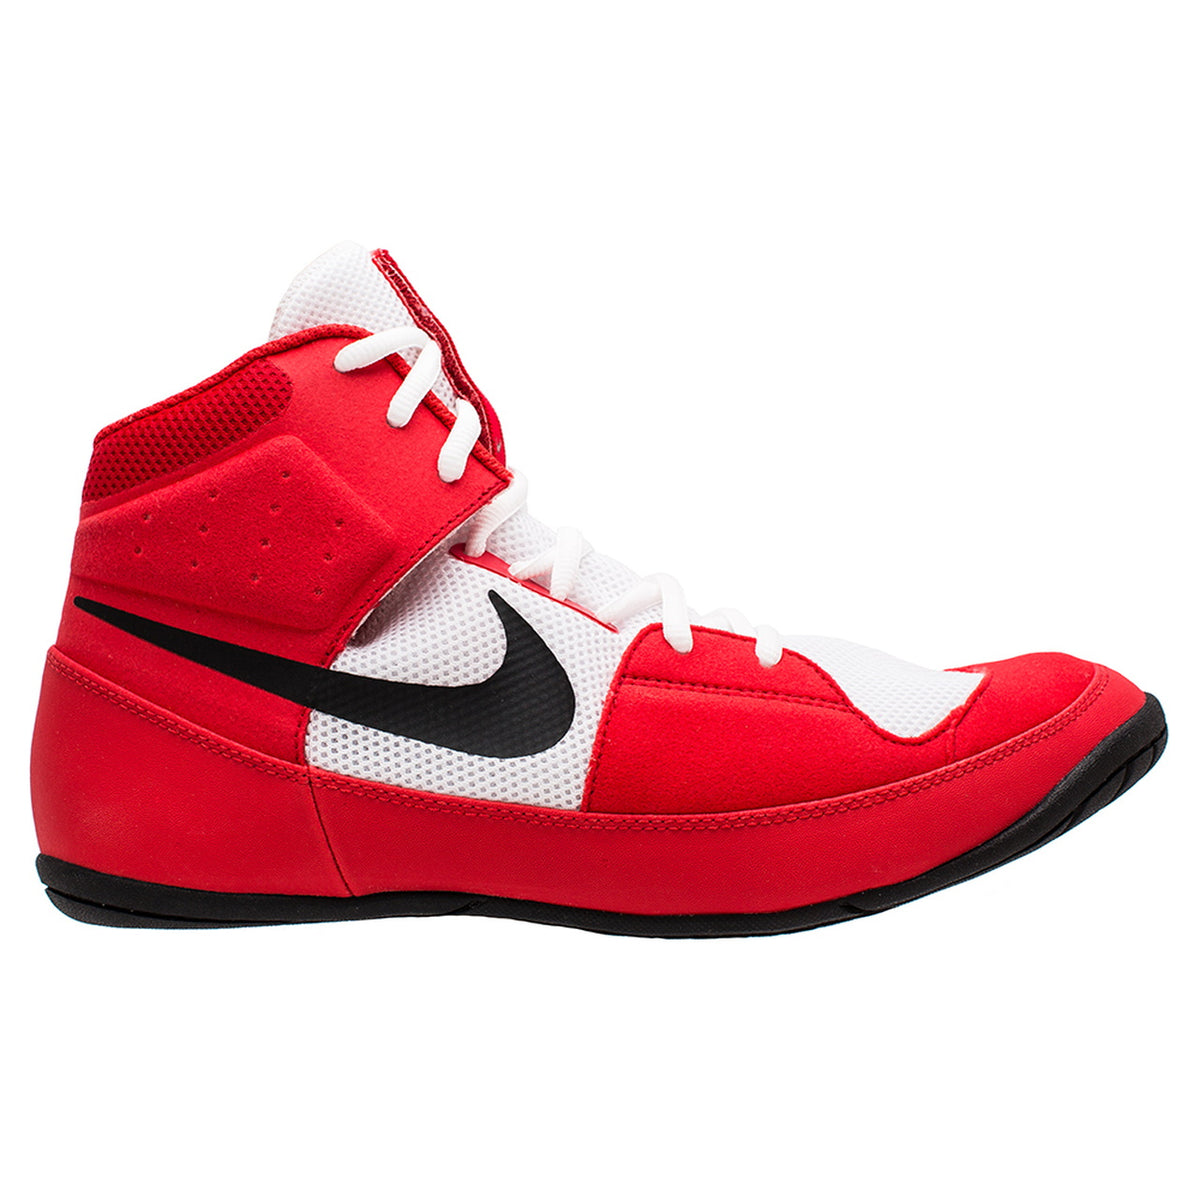 Zapatos de lucha Nike Fury. El zapato de lucha ideal para principiantes y luchadores avanzados. Gran calidad y tracción sobre la alfombra. No importa si en competición o entrenando. Con las zapatillas de lucha de Nike estarás a la vanguardia. Aquí en color rojo/blanco.